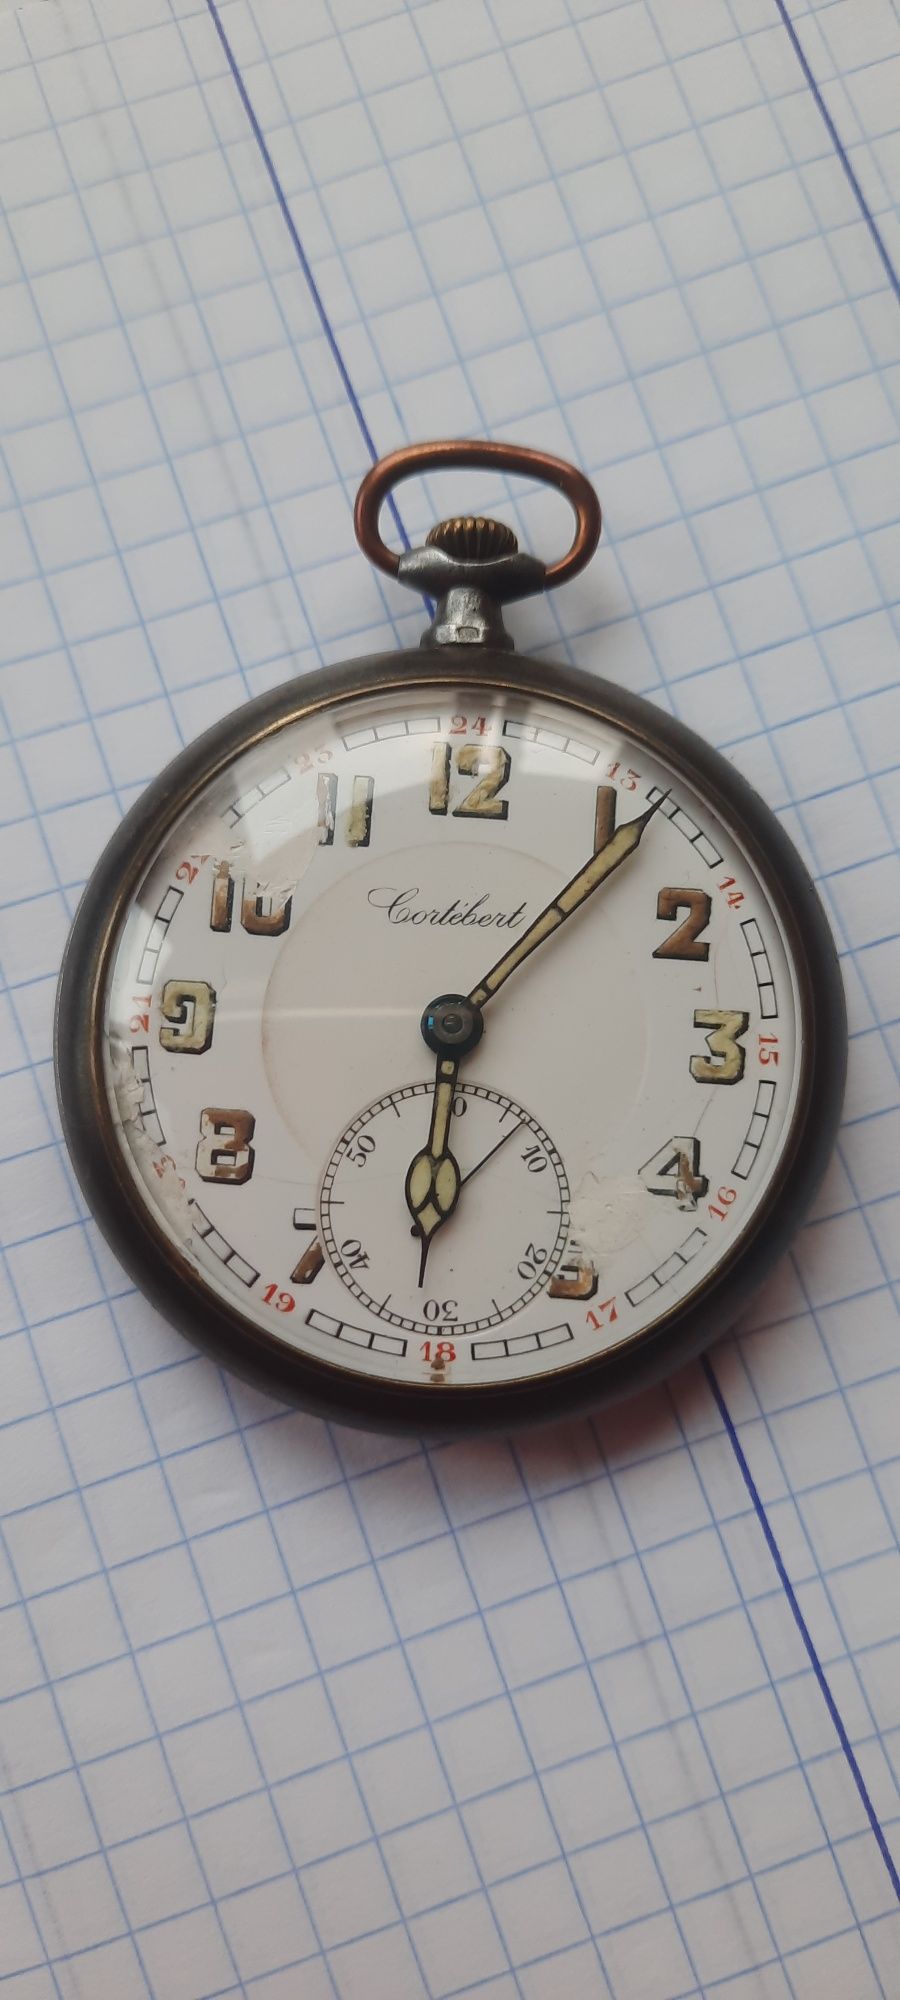 Relógio de bolso Cortébert  antigo